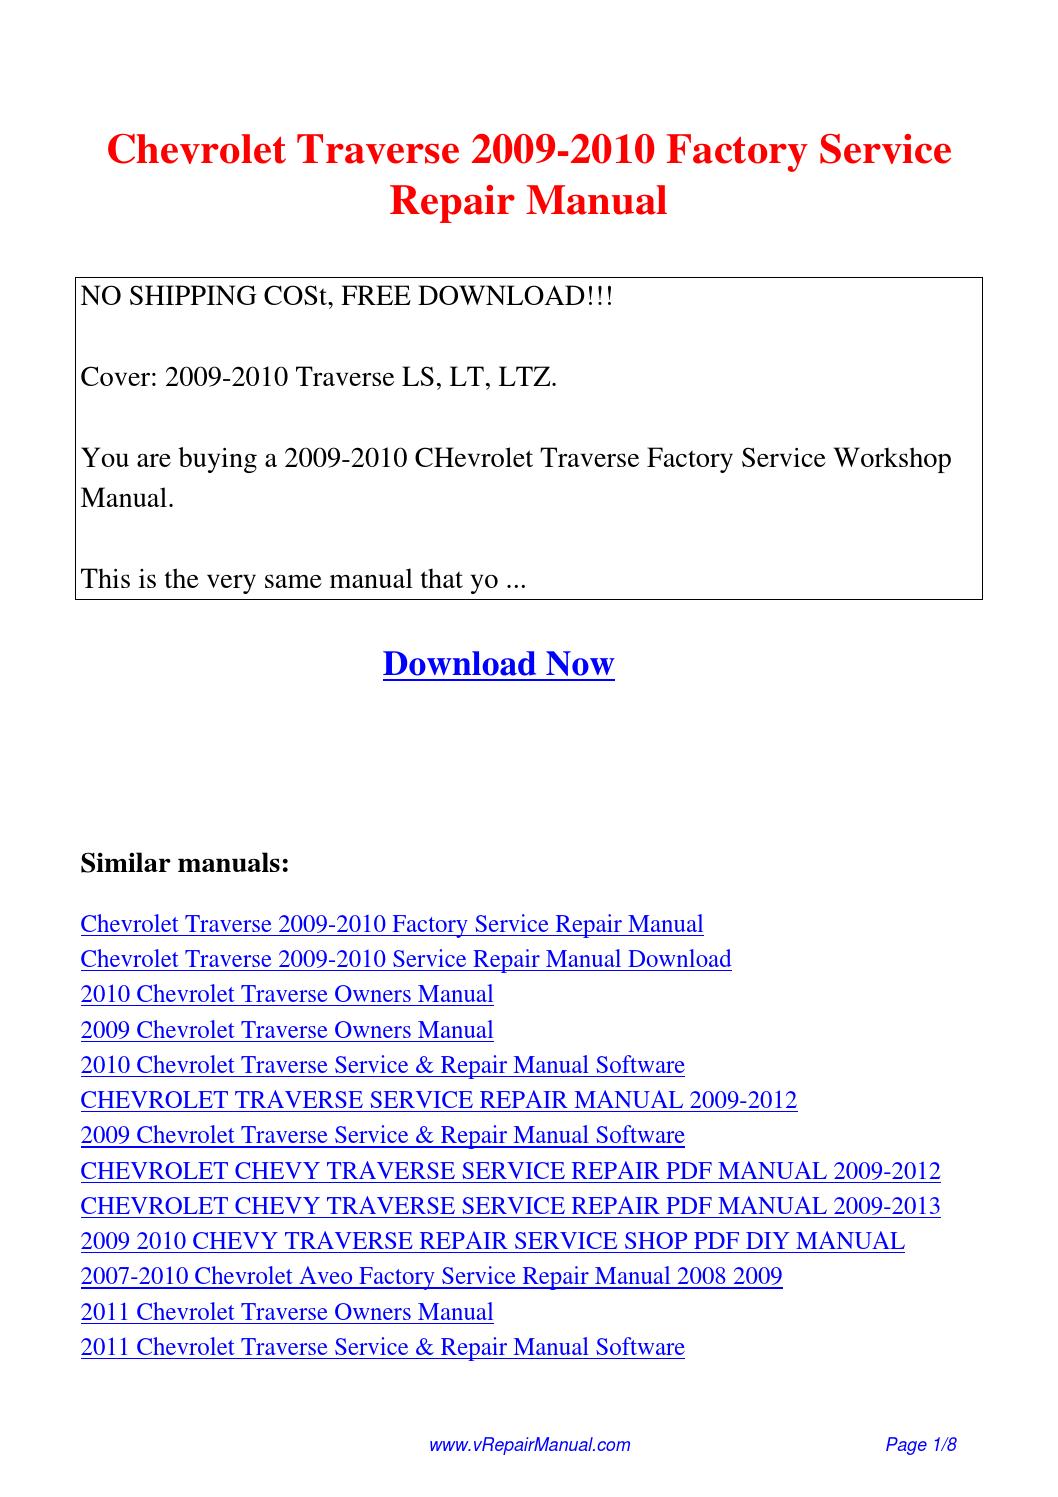 chevrolet spark repair manual pdf free download